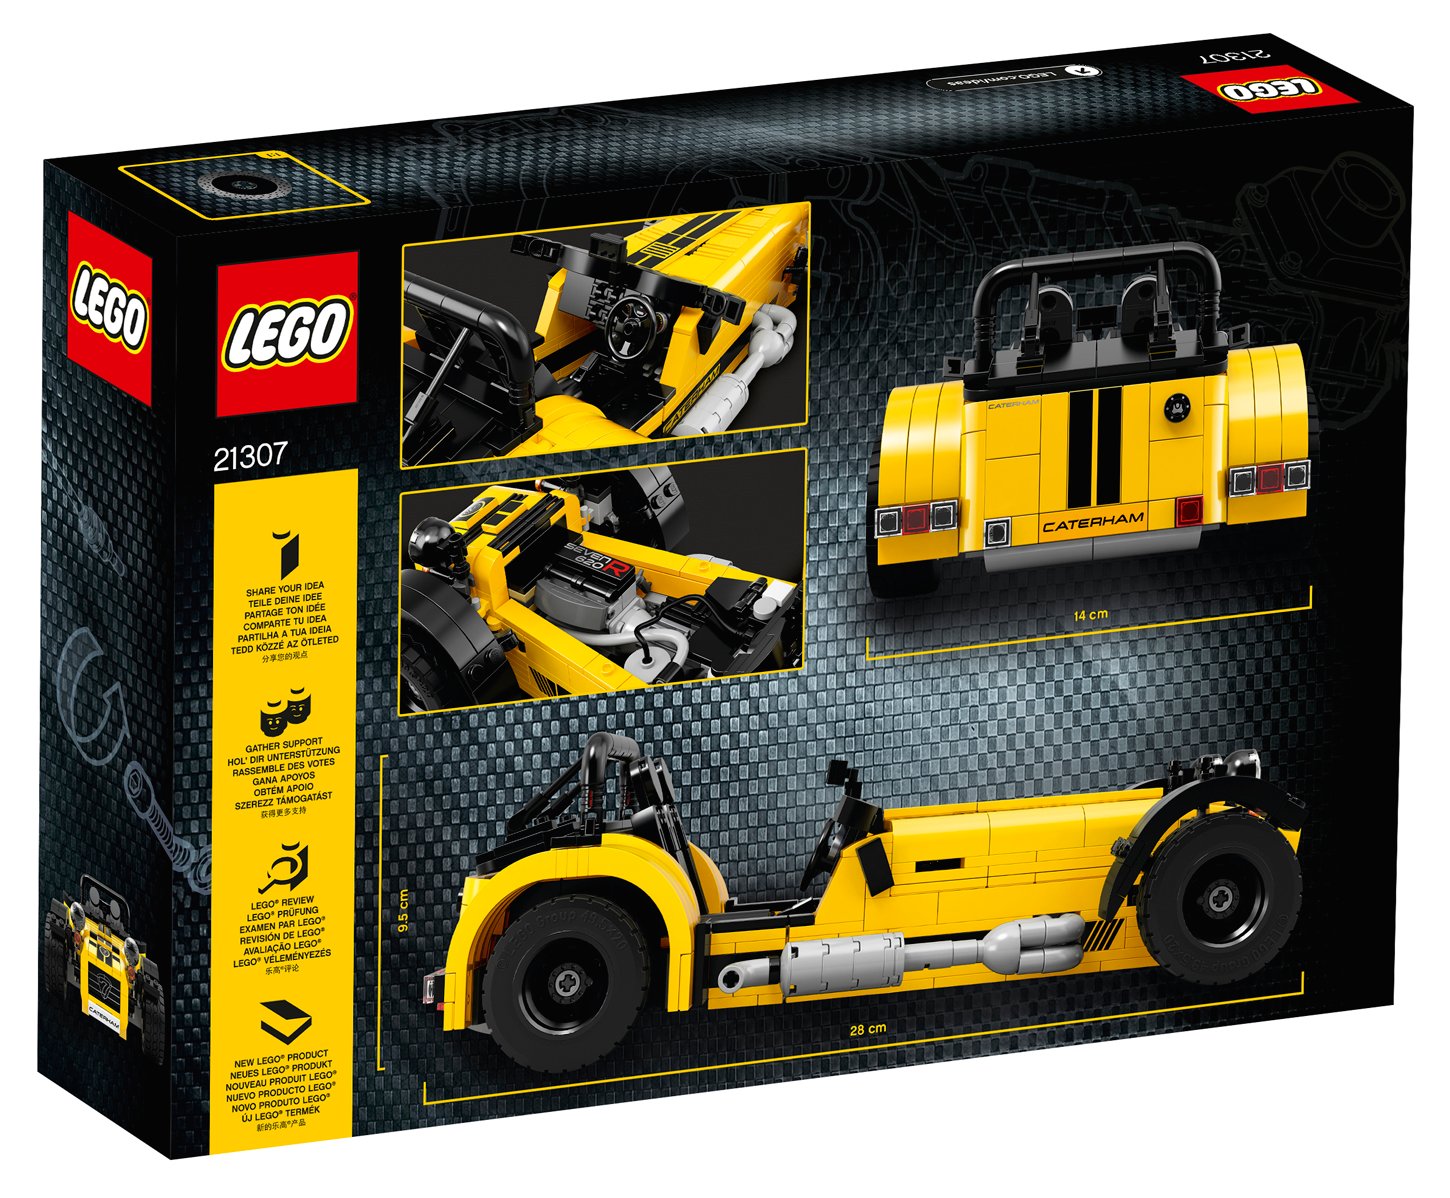 Lego uvádí na trh stavebnici Caterhamu Seven 620R.